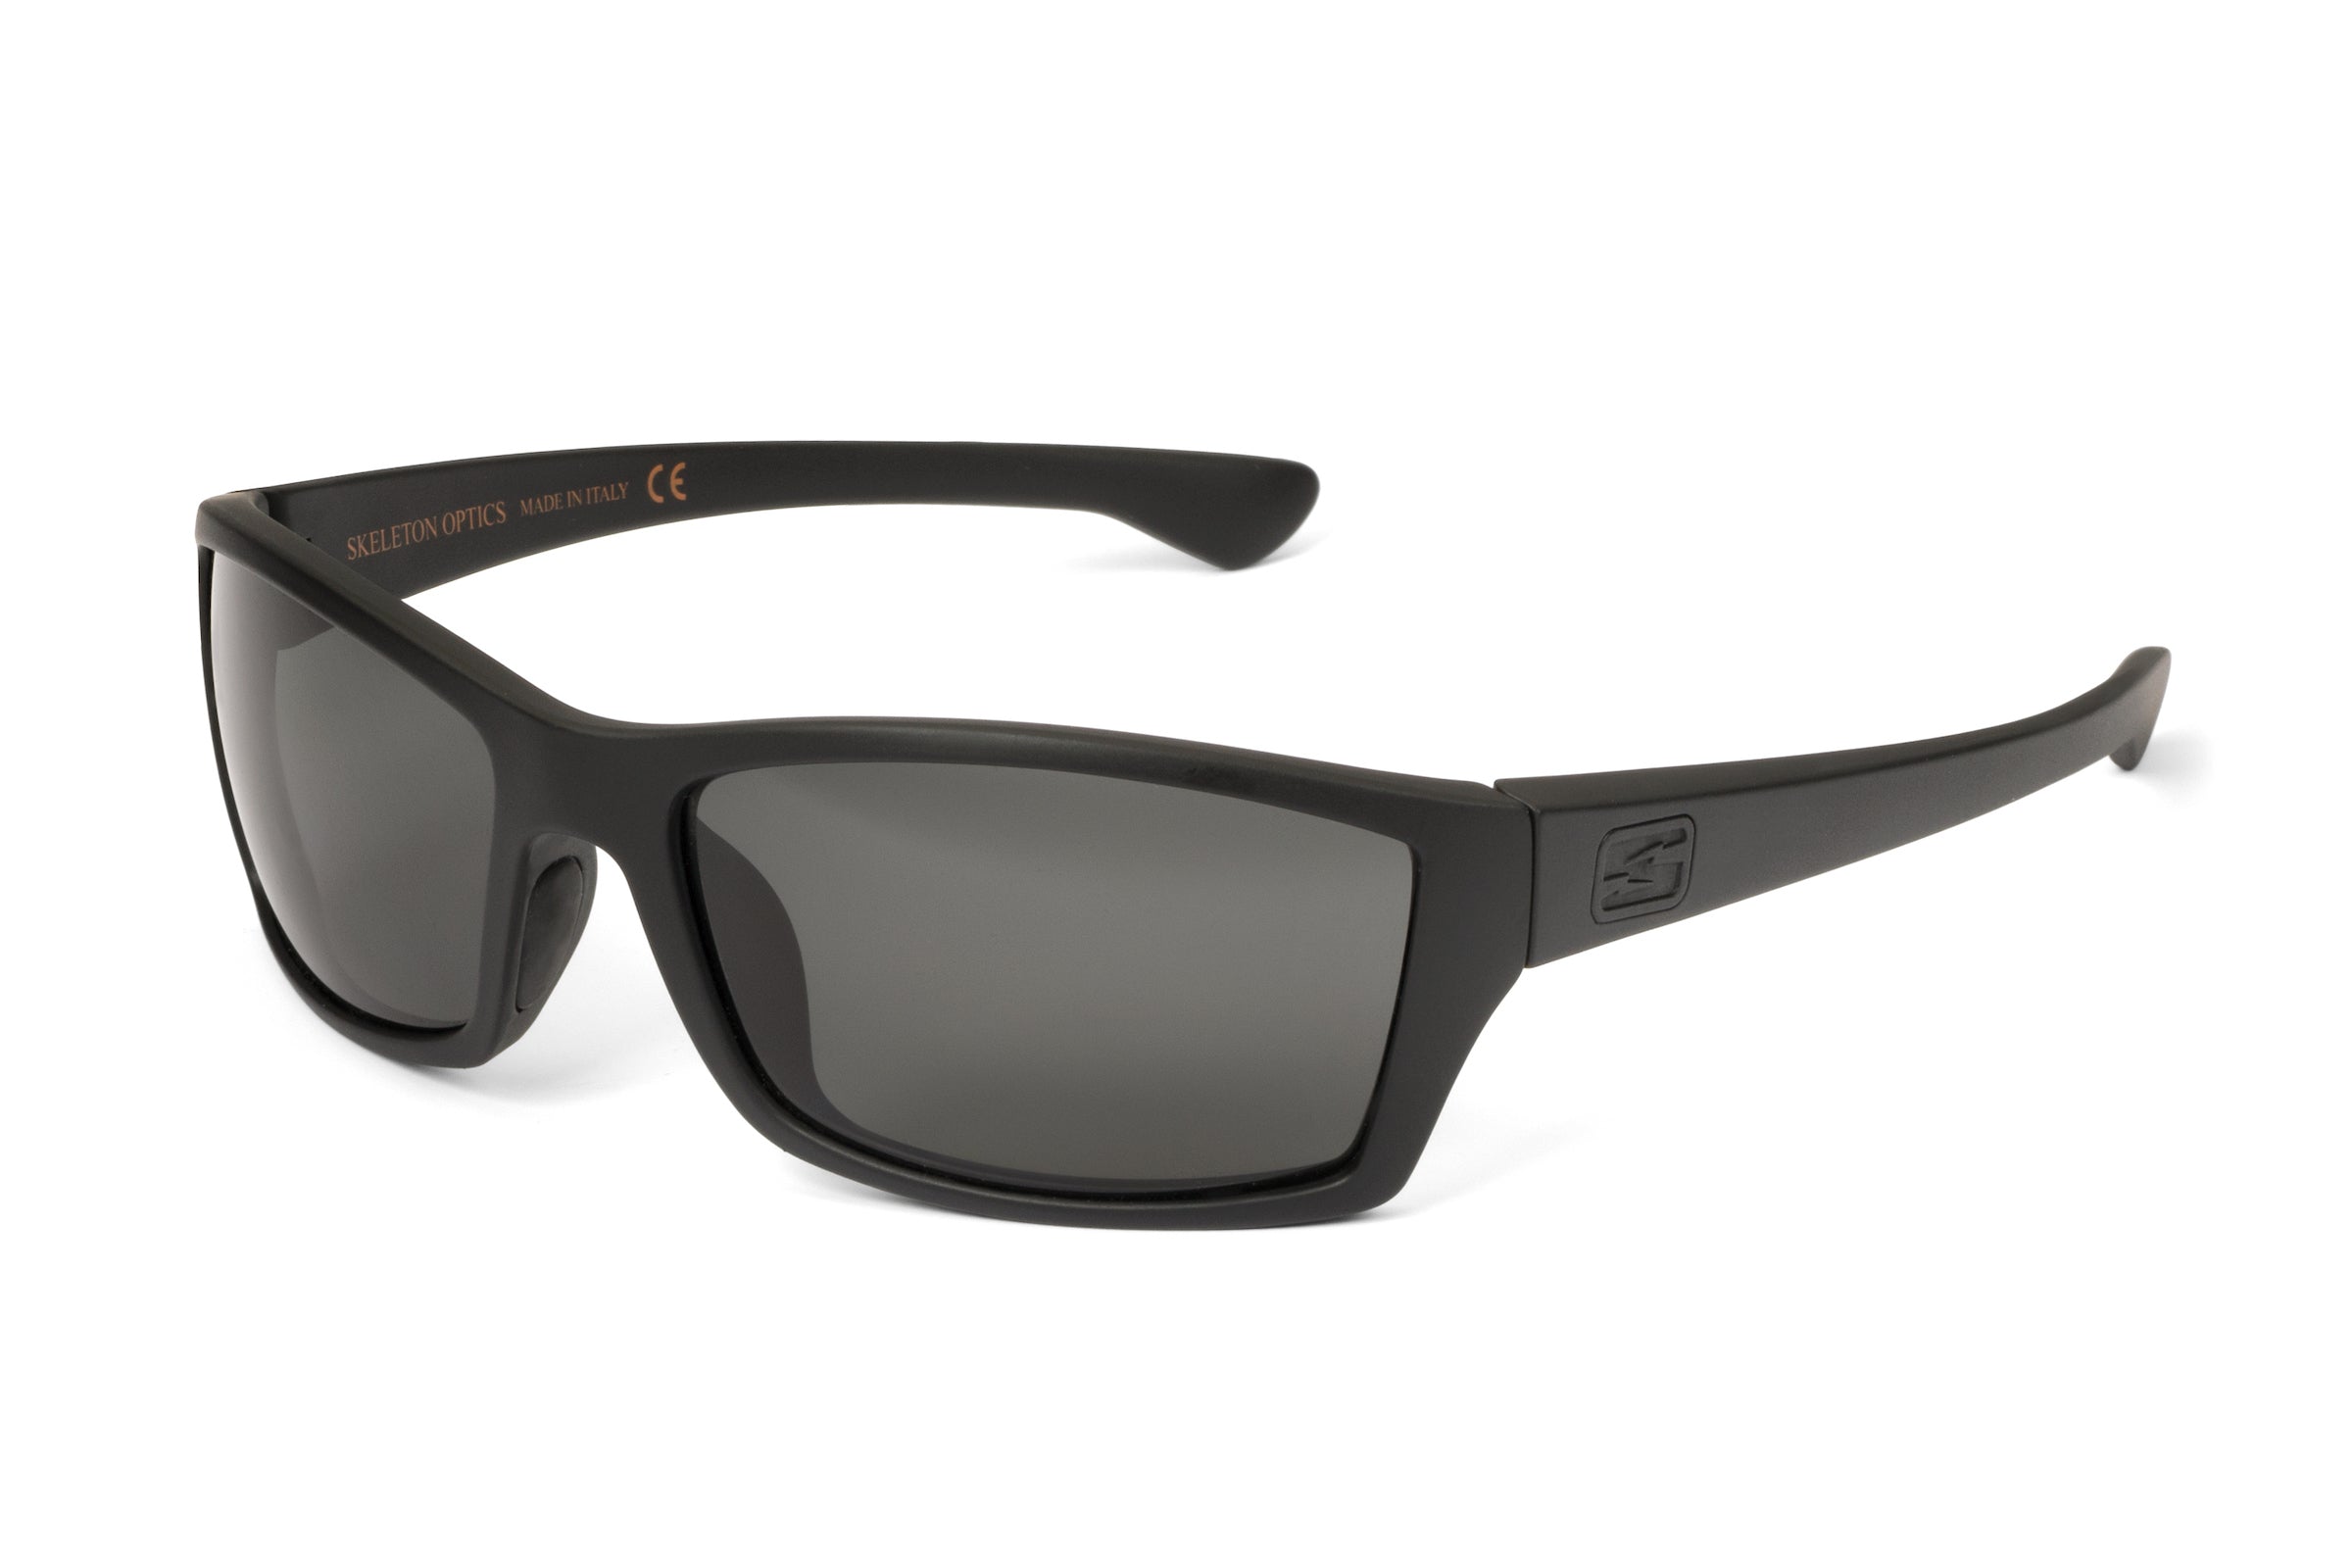 Matte black sunglasses frame with gray lenses